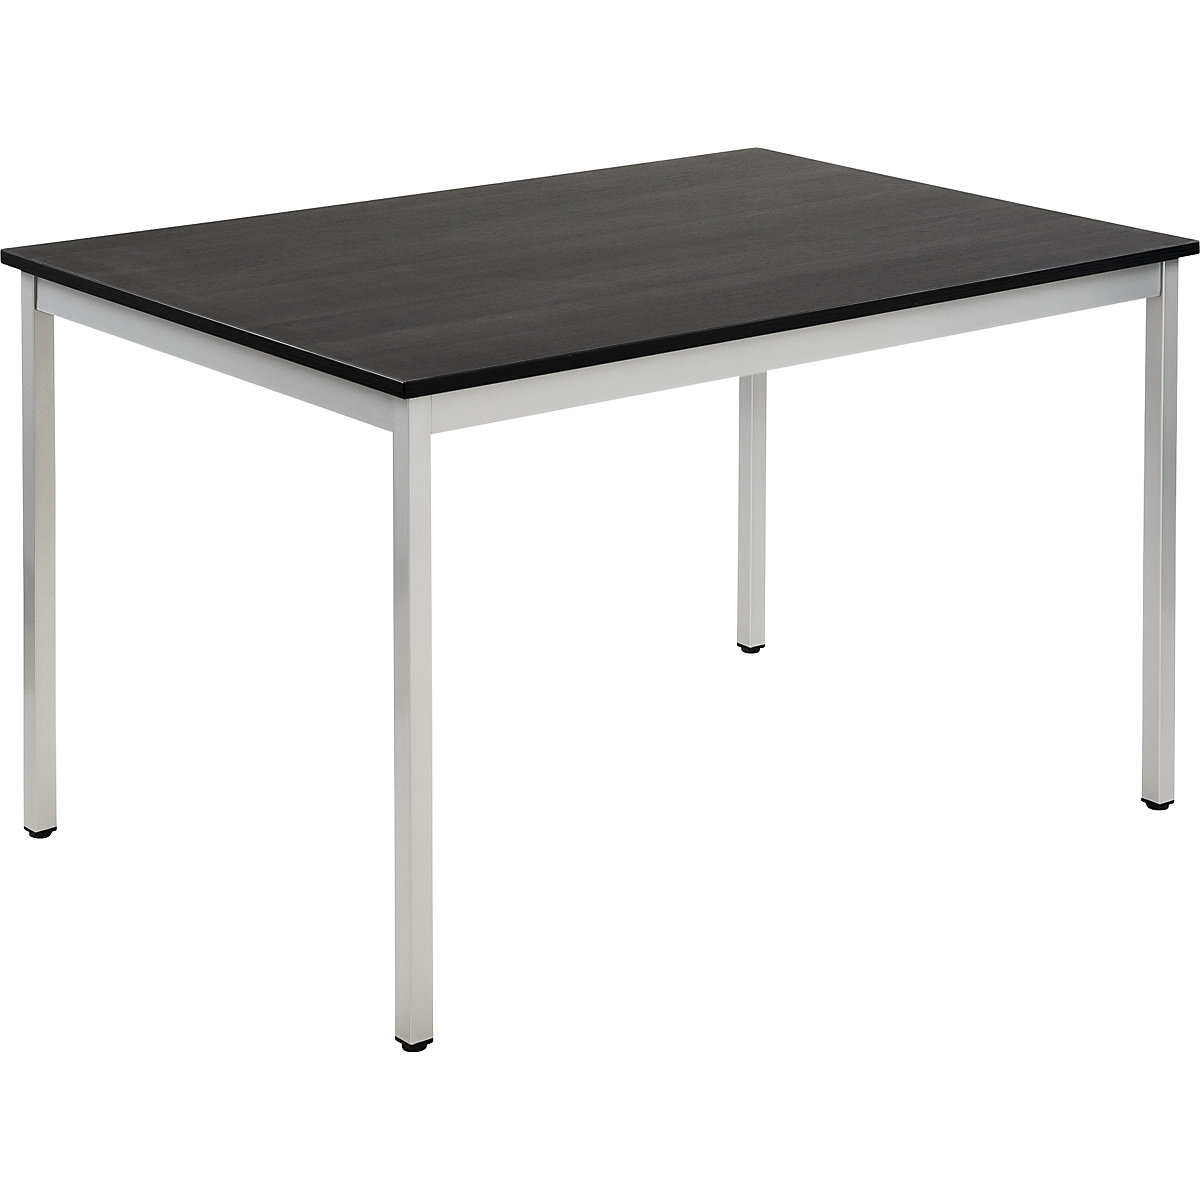 Univerzális asztal – eurokraft basic, négyszög alakú, szé x ma 1200 x 740 mm, mélység 800 mm, sötétszürke kőris-dekor lap, fehéralumínium váz-19